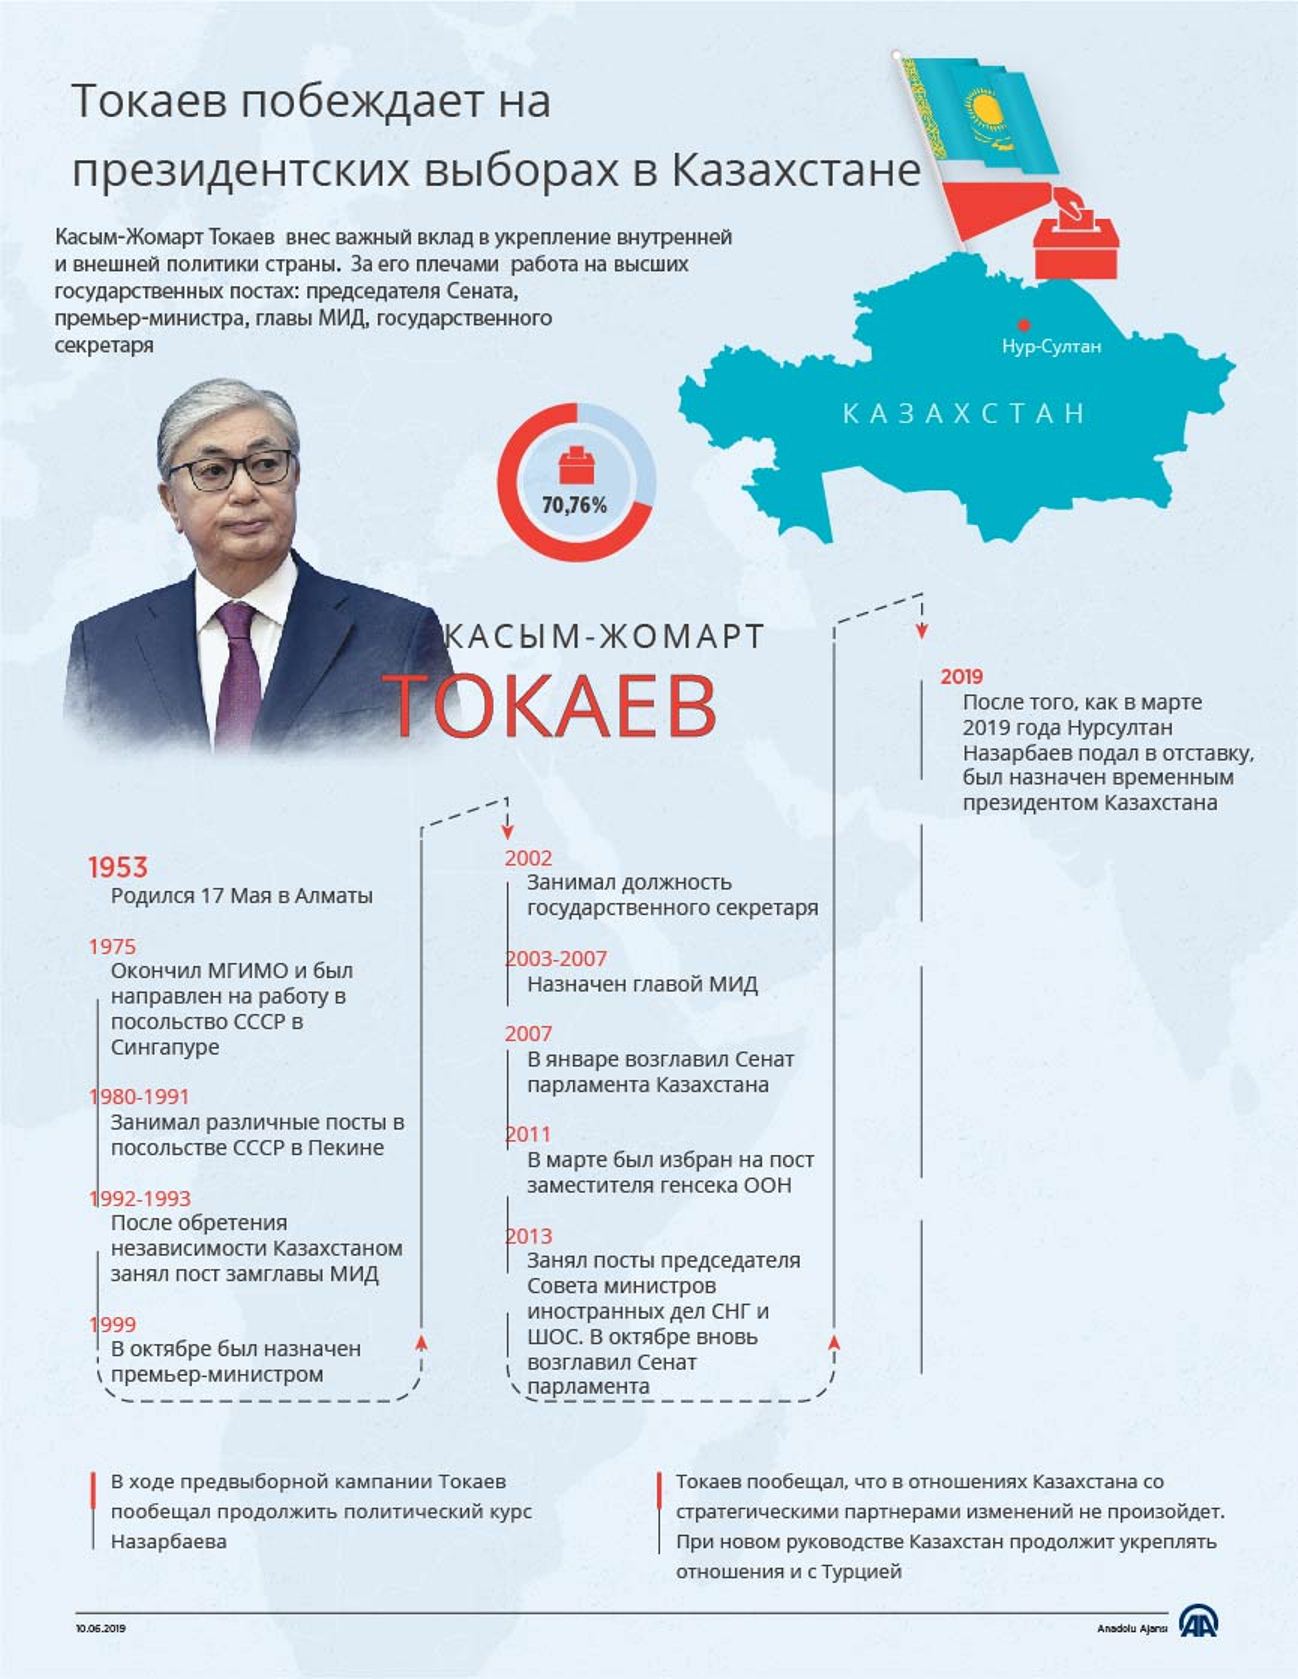 Казахстан: выбор в пользу преемственности